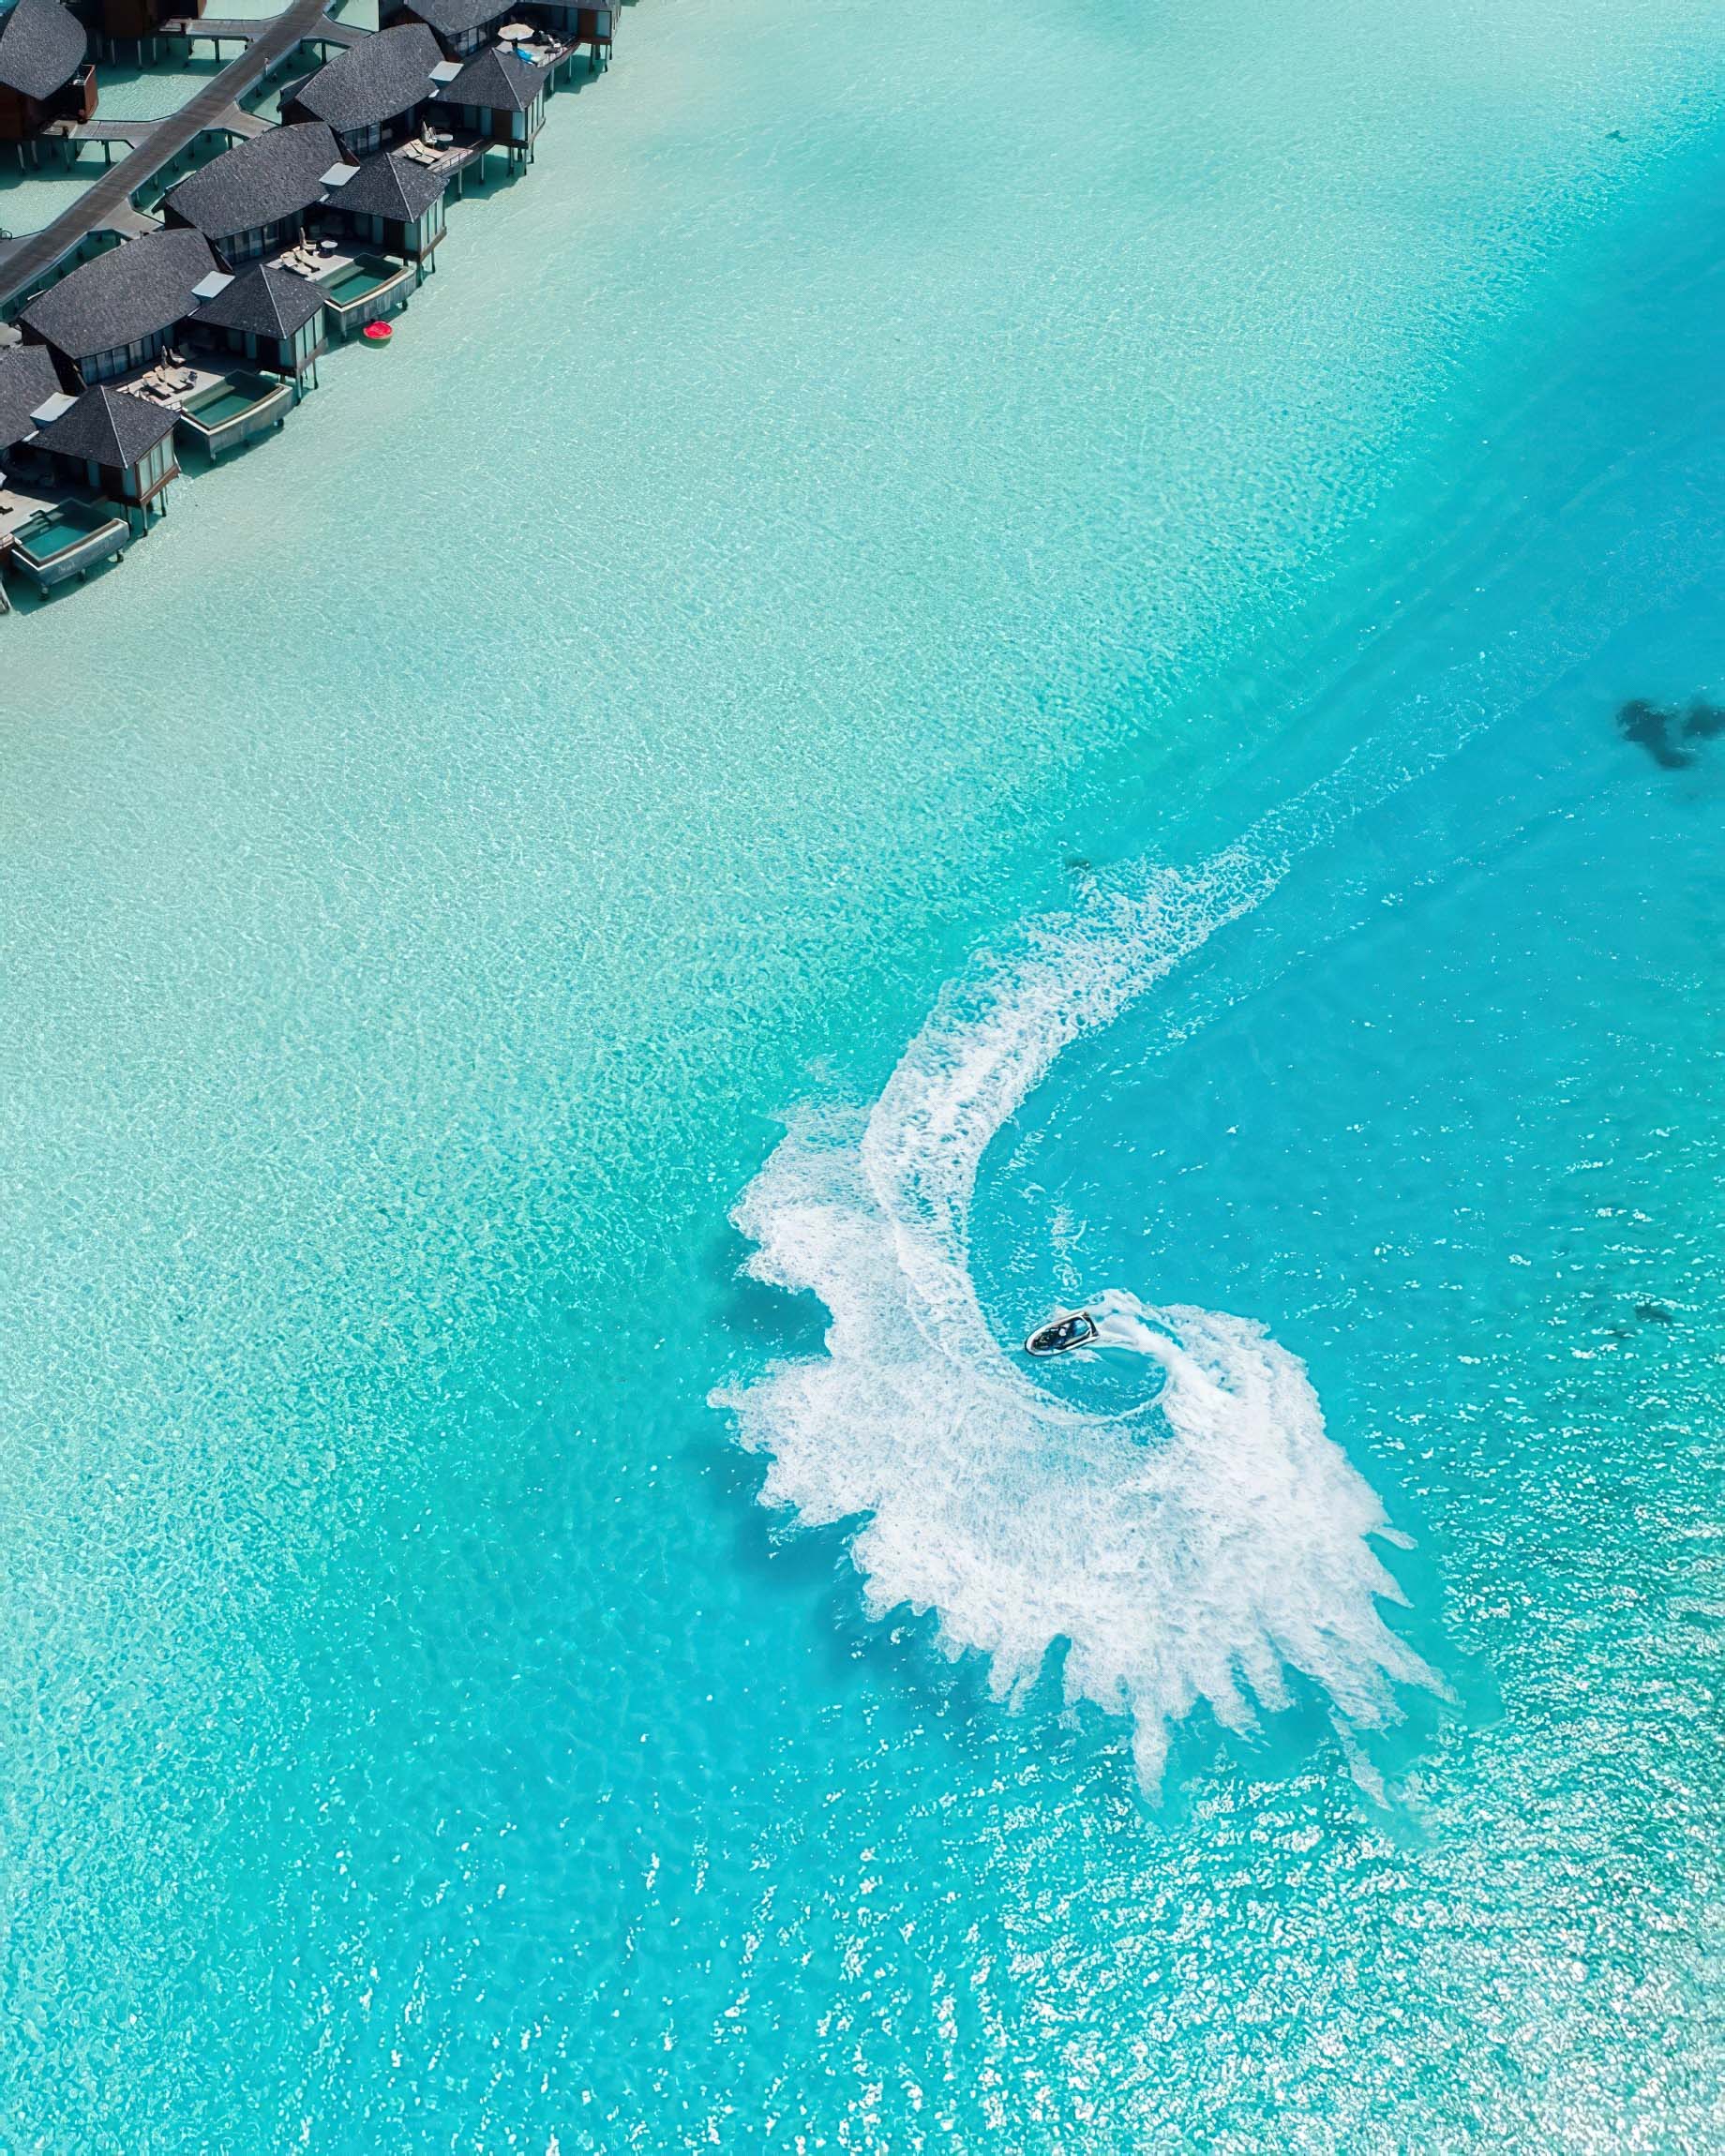 Anantara Thigu Maldives Resort – South Male Atoll, Maldives – Jet Skiing